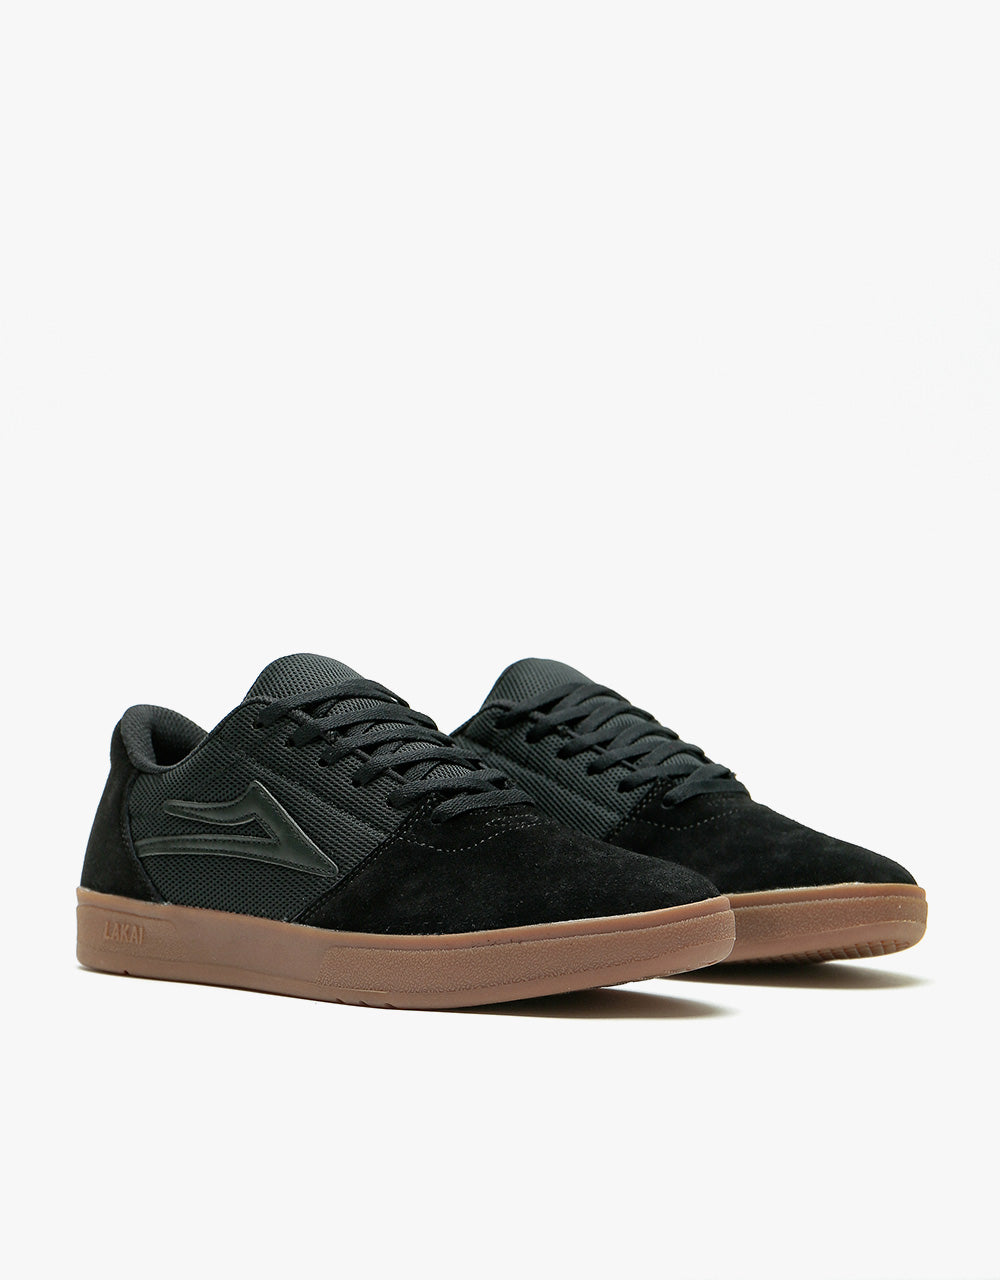 Lakai Brighton Skate Shoes - Black/Gum Suede